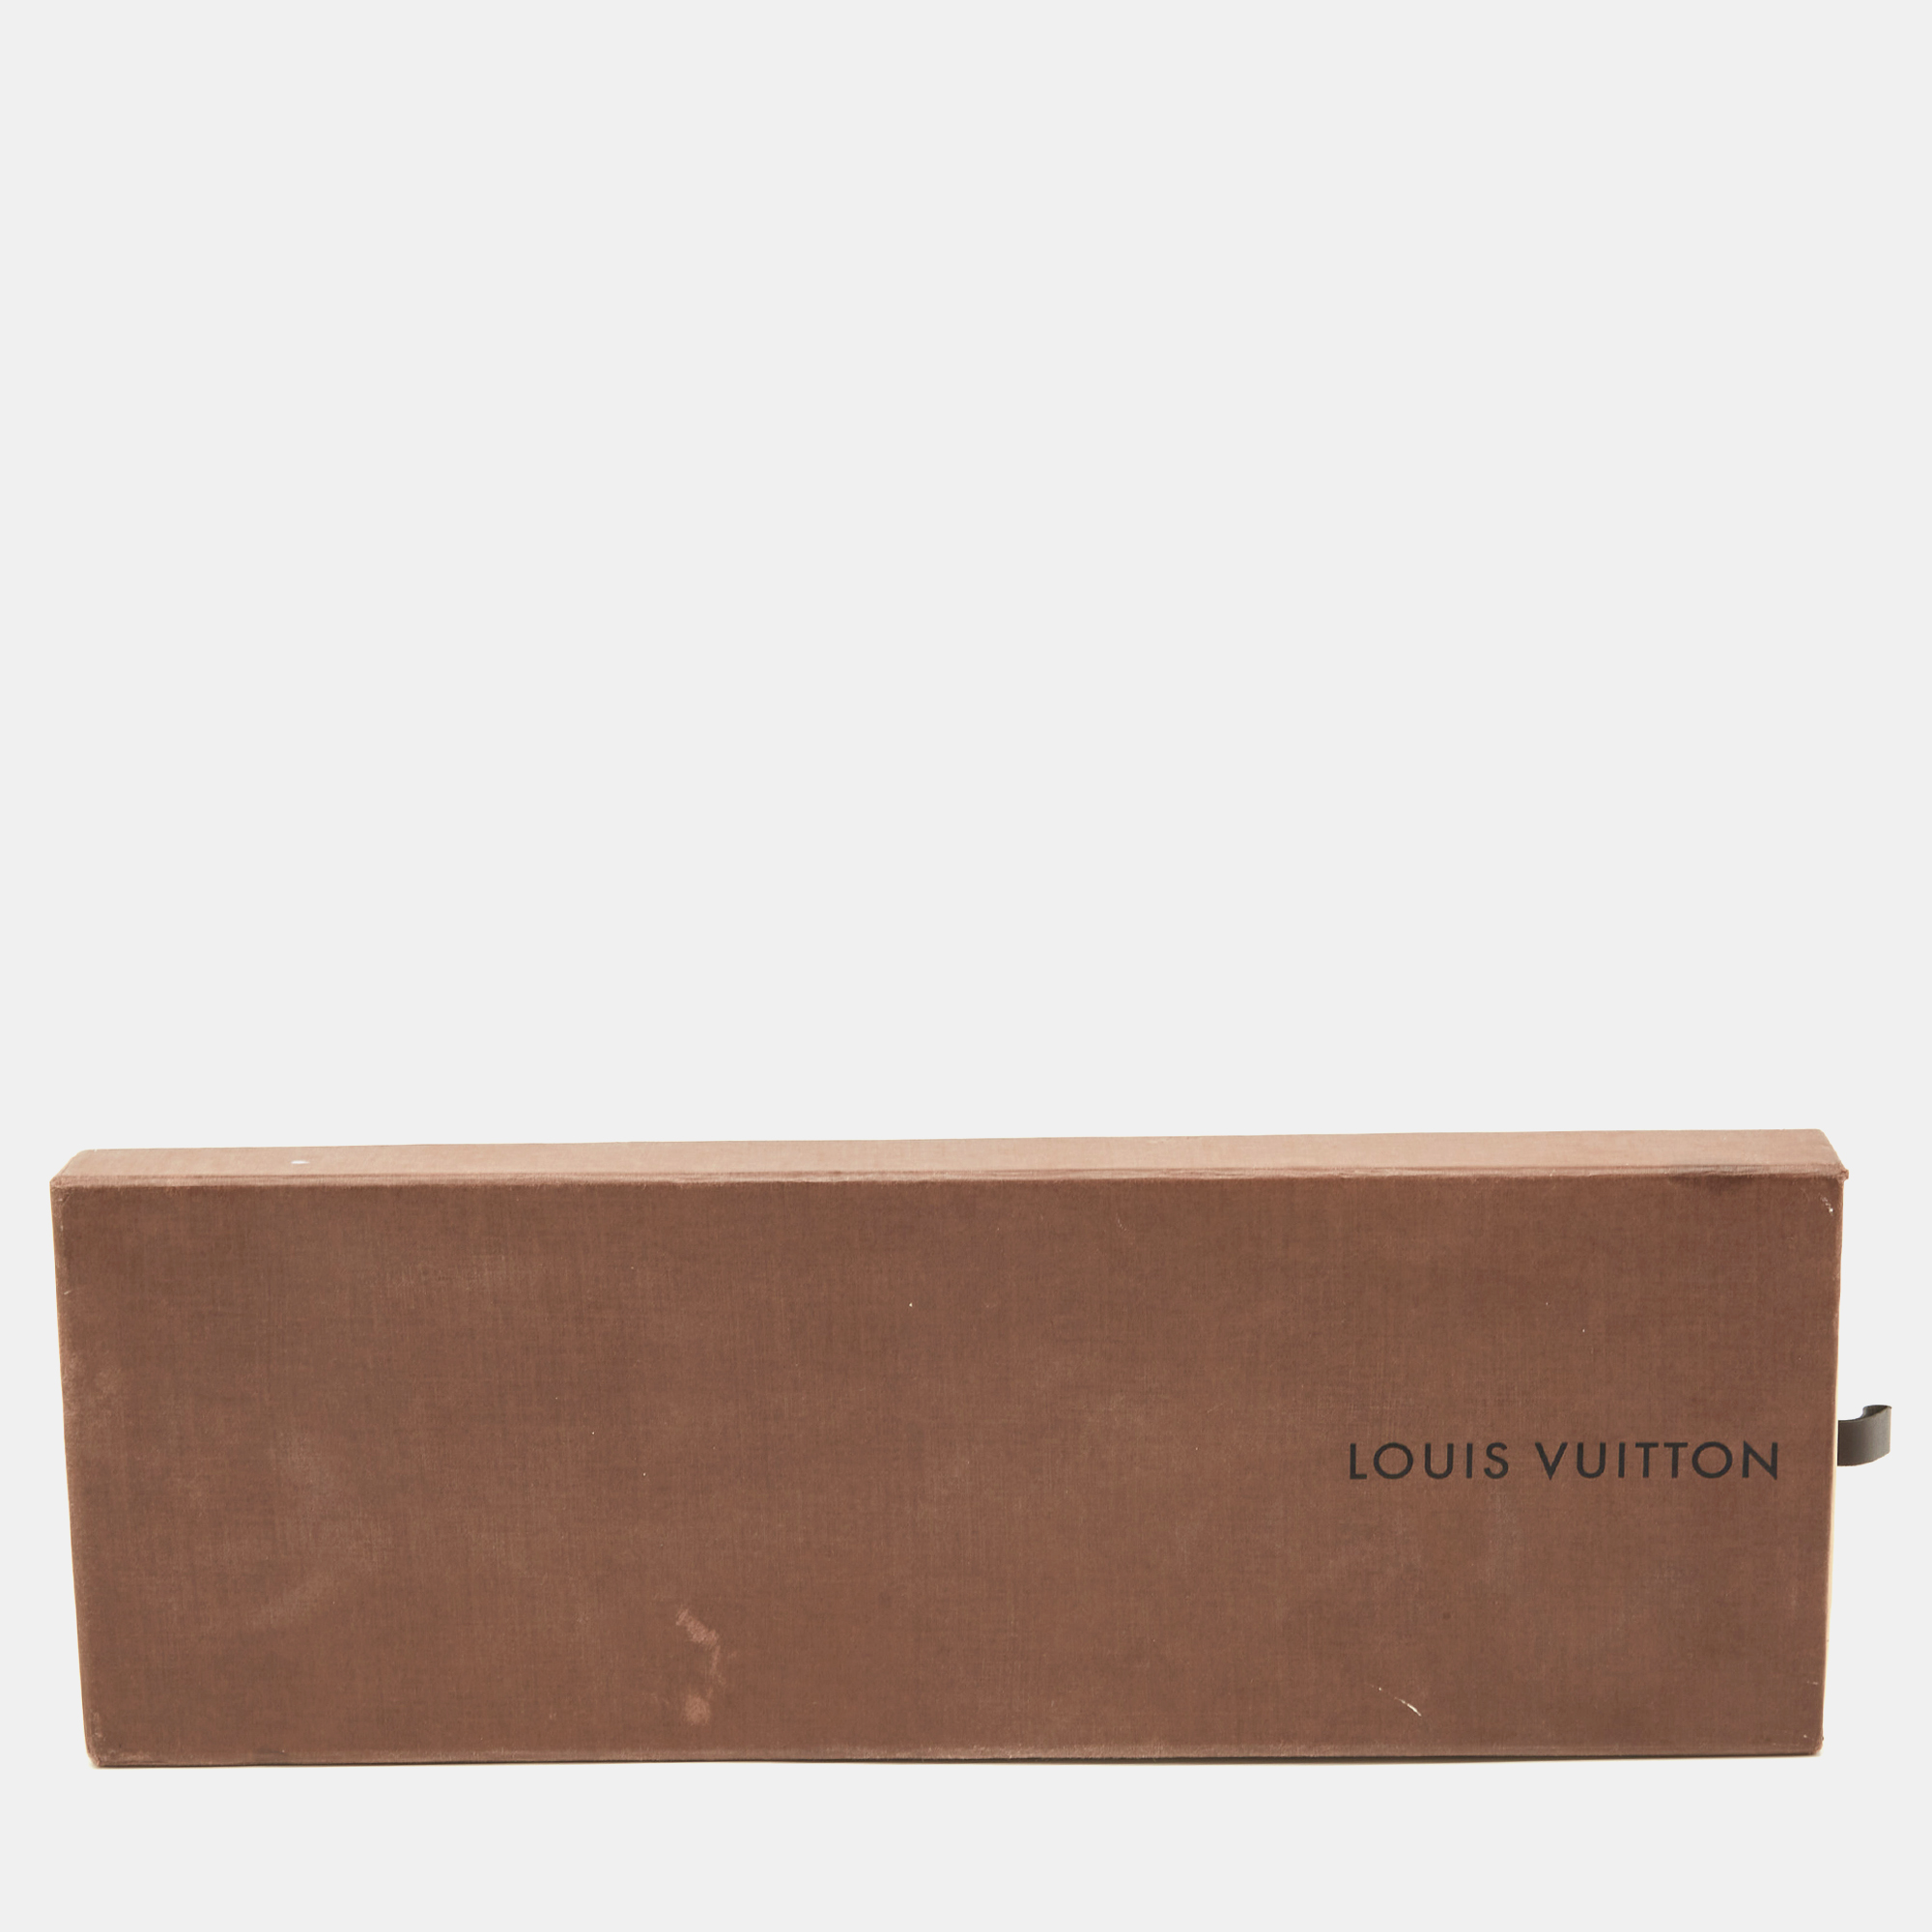 Louis Vuitton Black Damier Gold Silk Tie